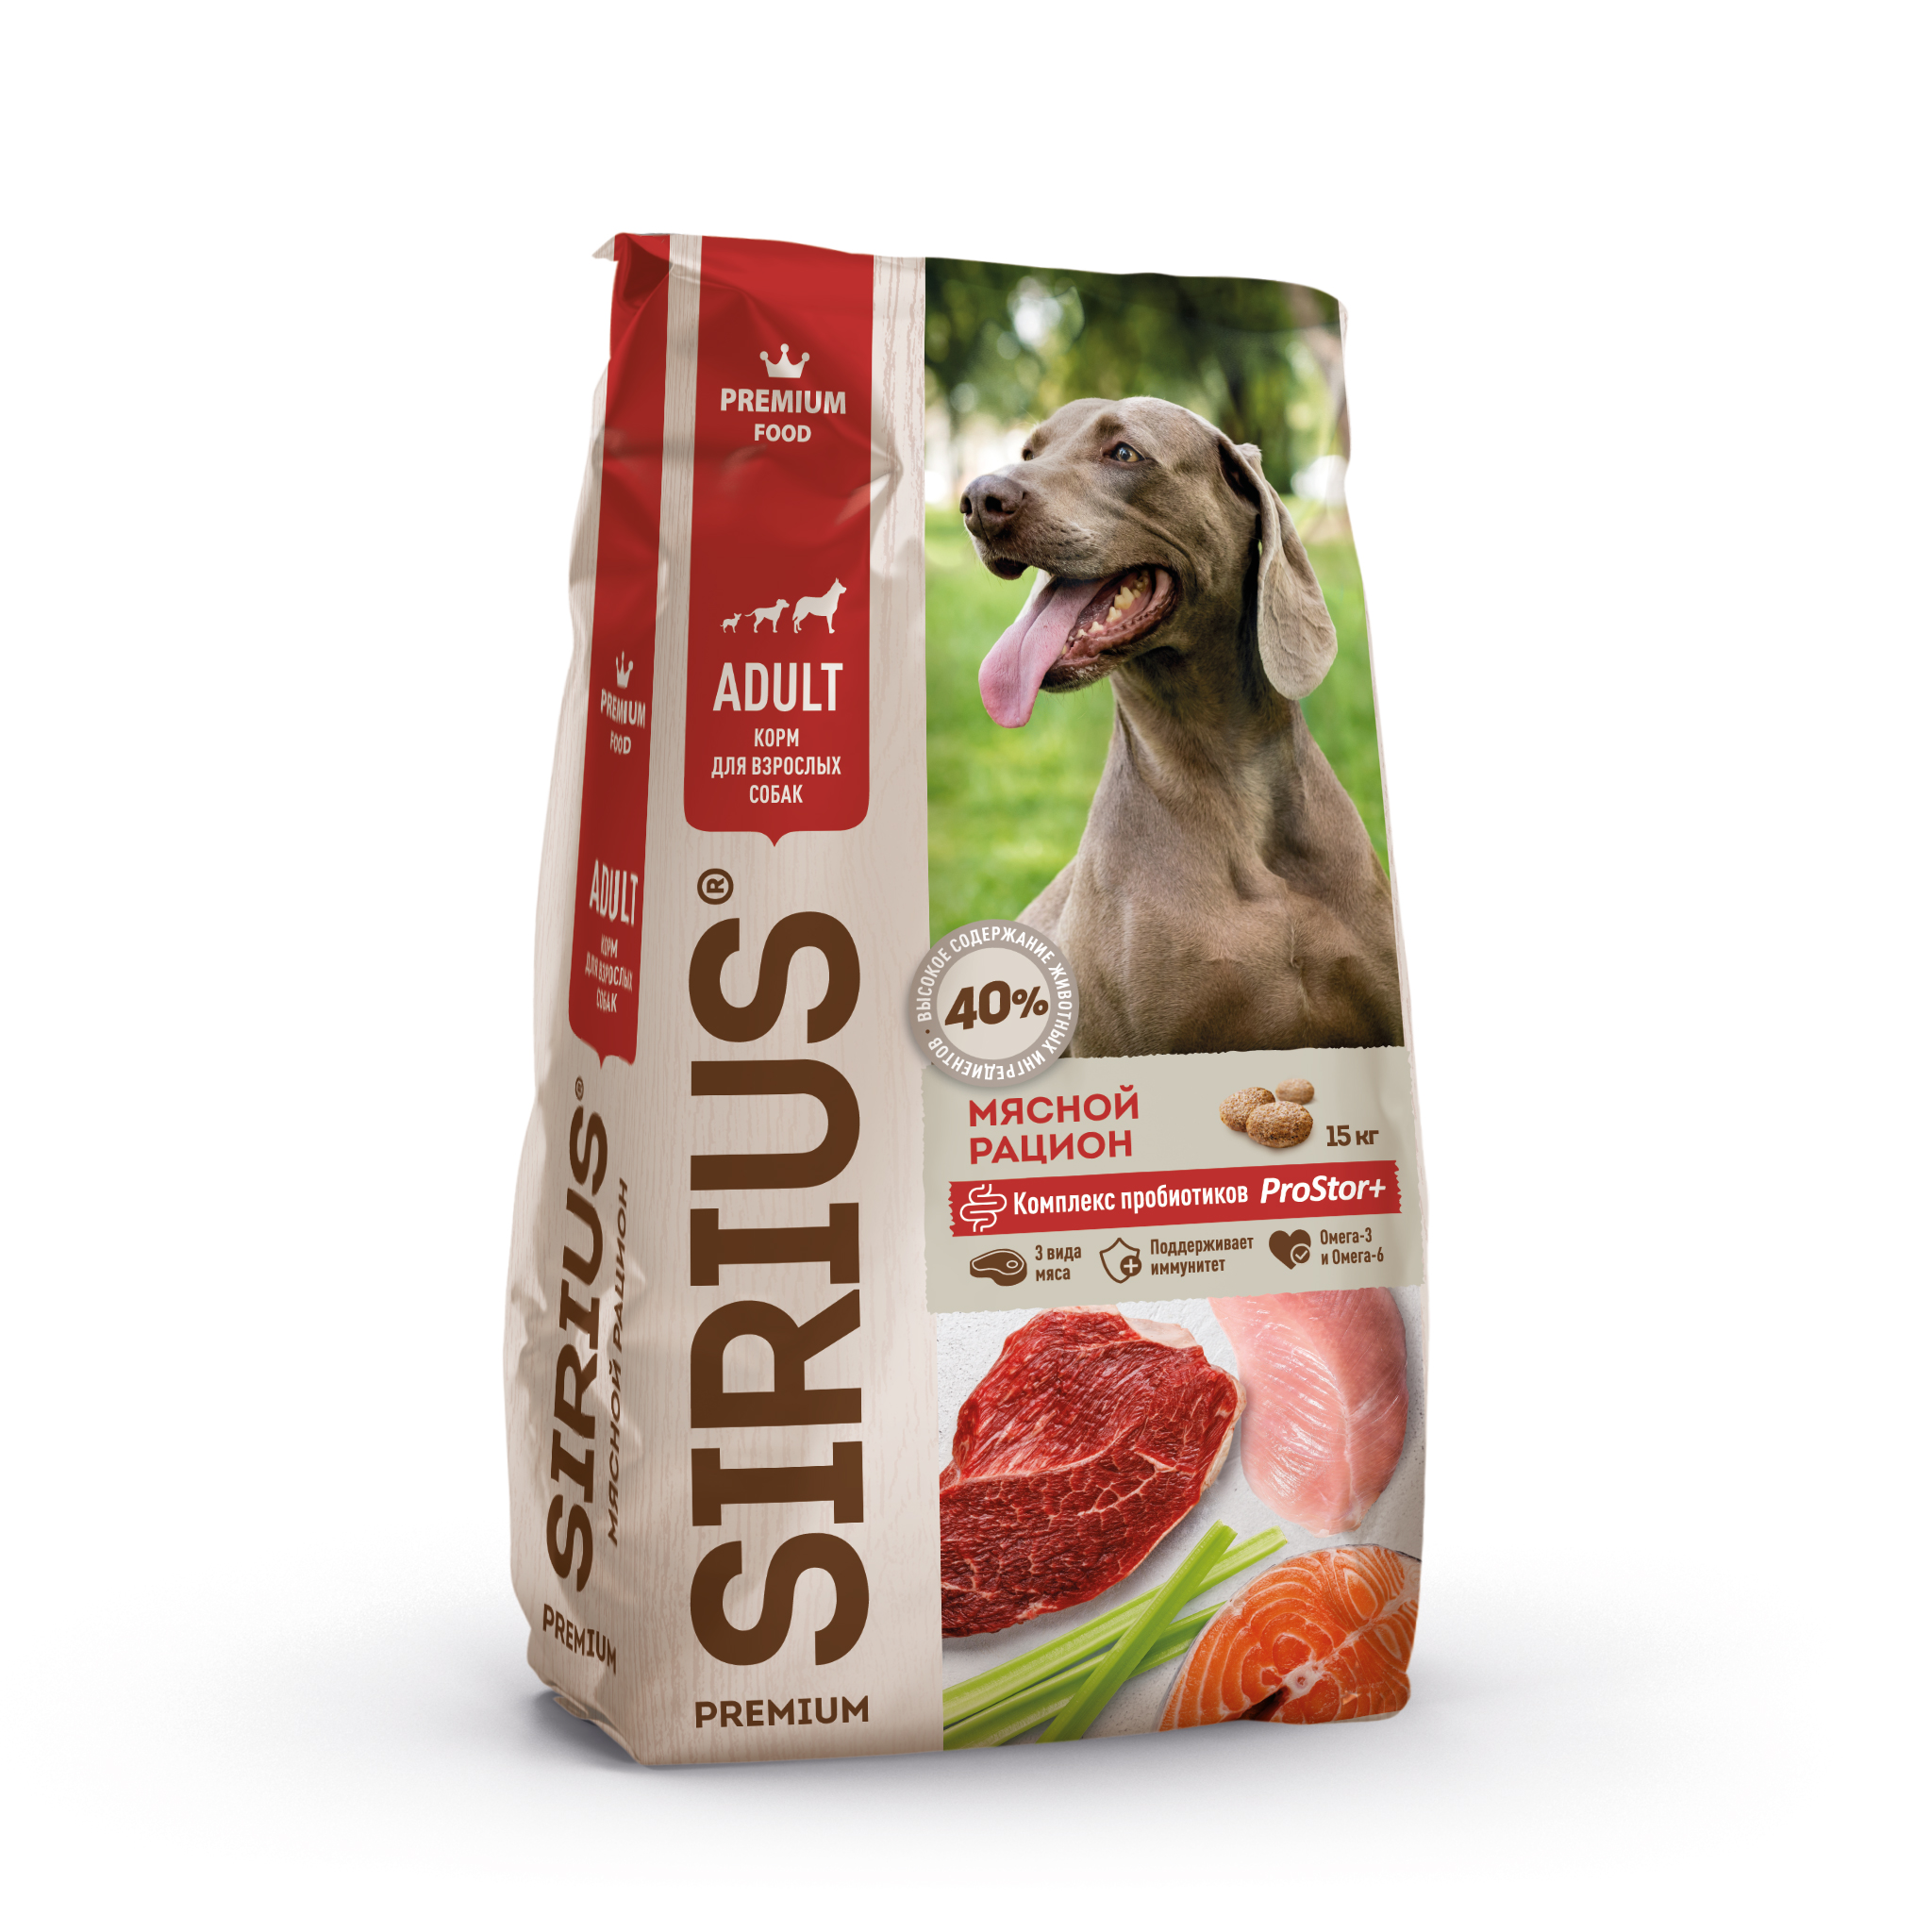 Корм сириус для собак 15 кг. Корм Сириус для щенков 15кг. Sirius сухой корм для собак 15 кг. Sirius Premium корм для собак. Sirius корма 15 кг.